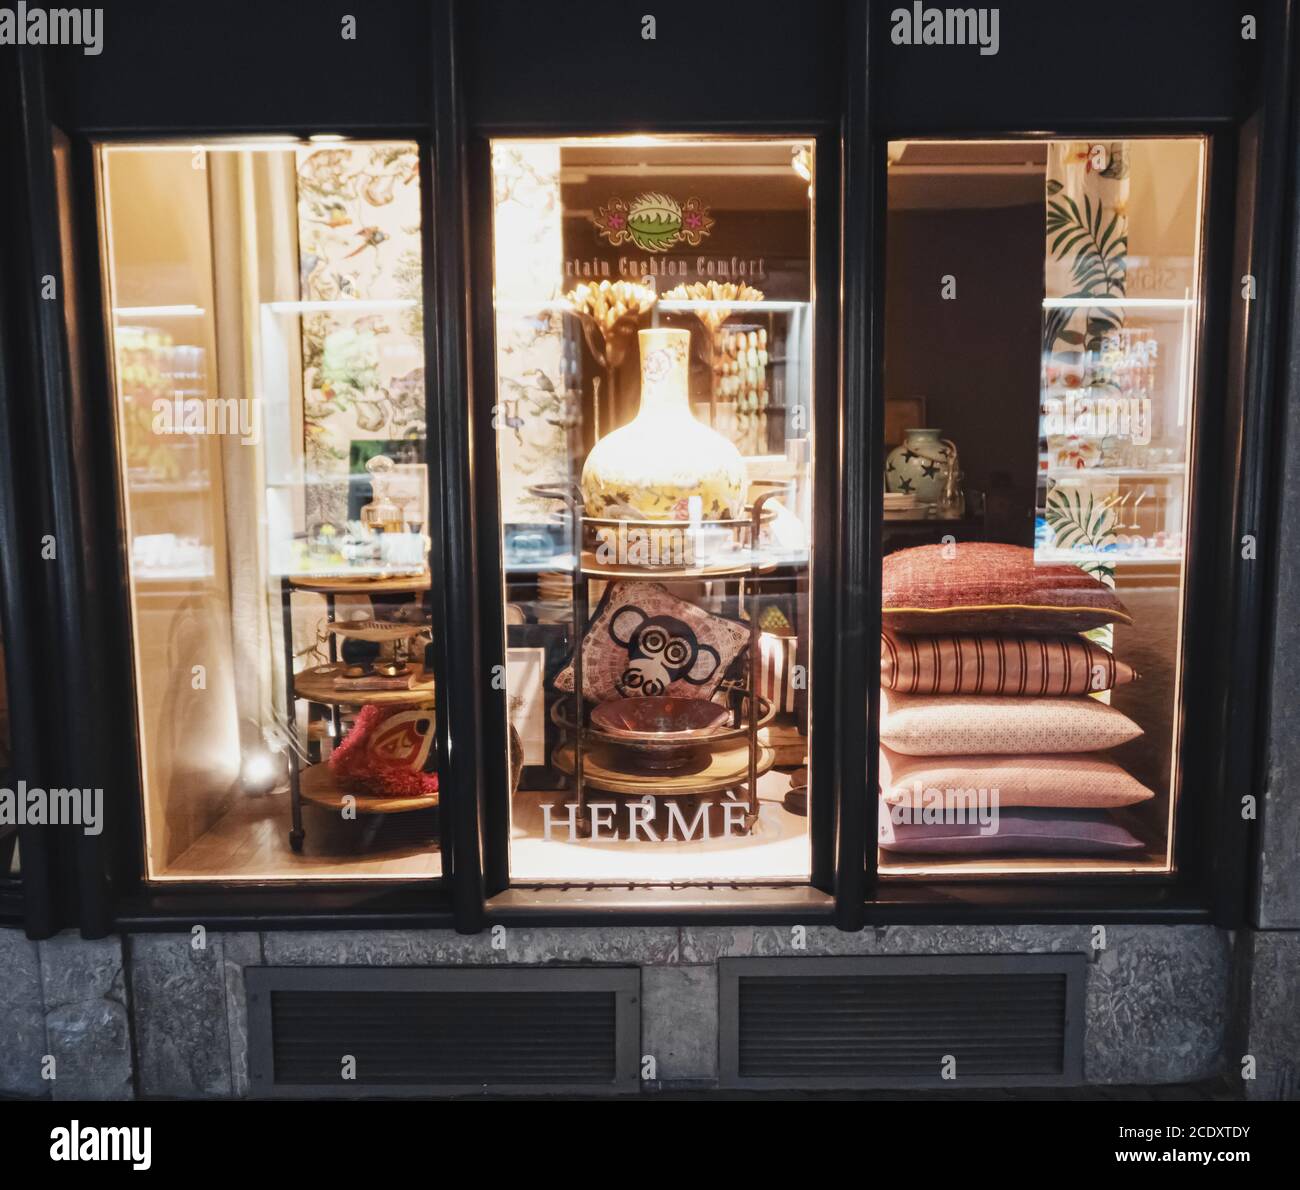 Schaufenster eines Luxus-Boutique-Stores in der Bahnhofstrasse in Zürich,  Schweiz Stockfotografie - Alamy